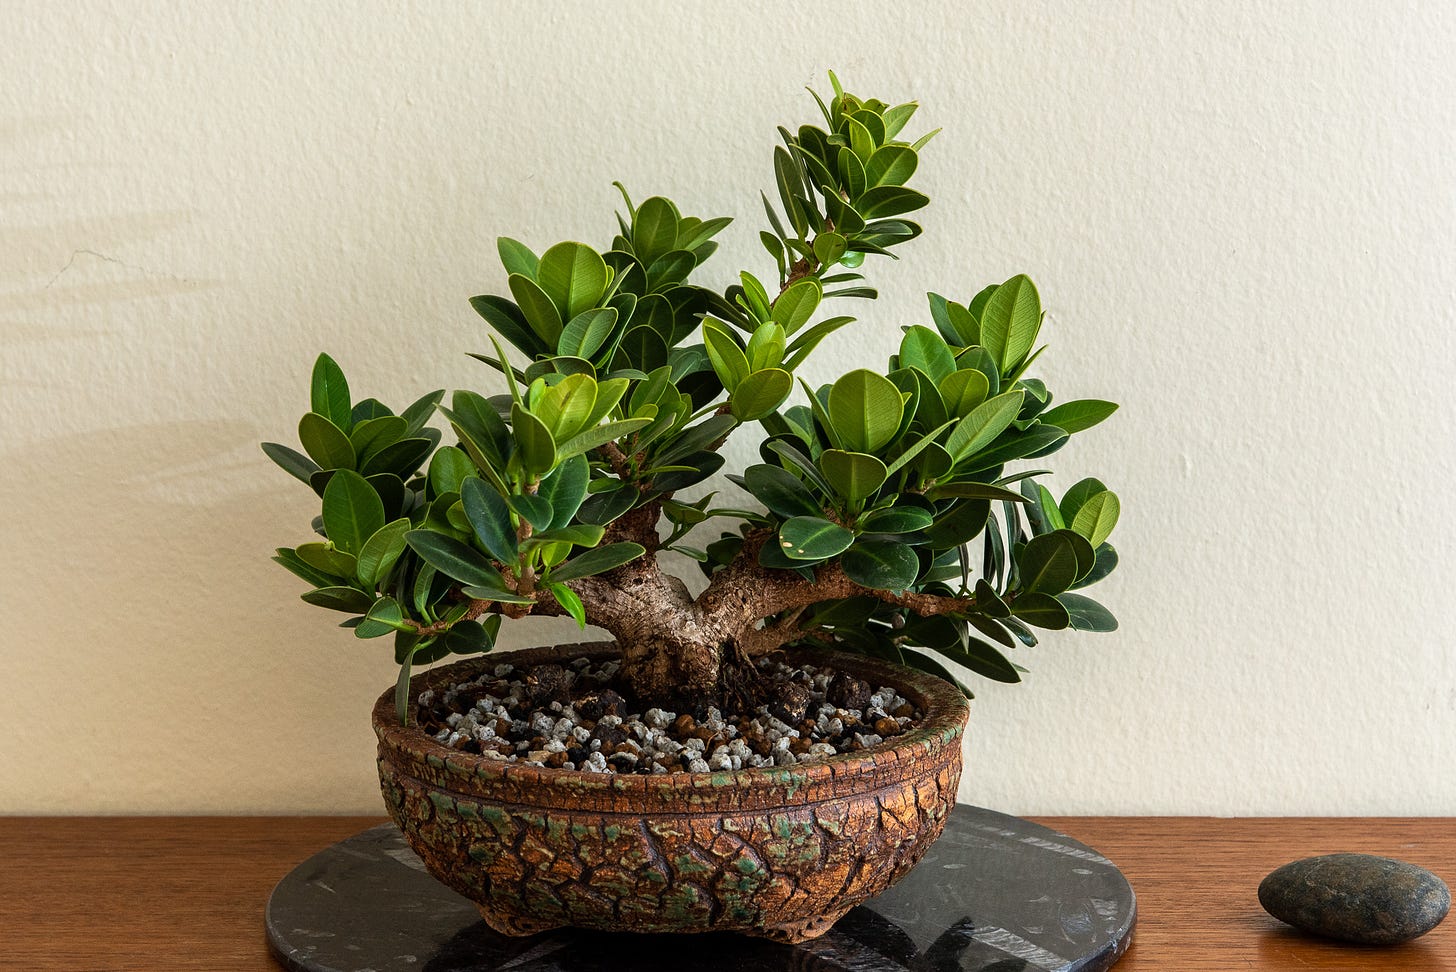 ID: Ficus bonsai tree in rough textured clay bonsai pot.